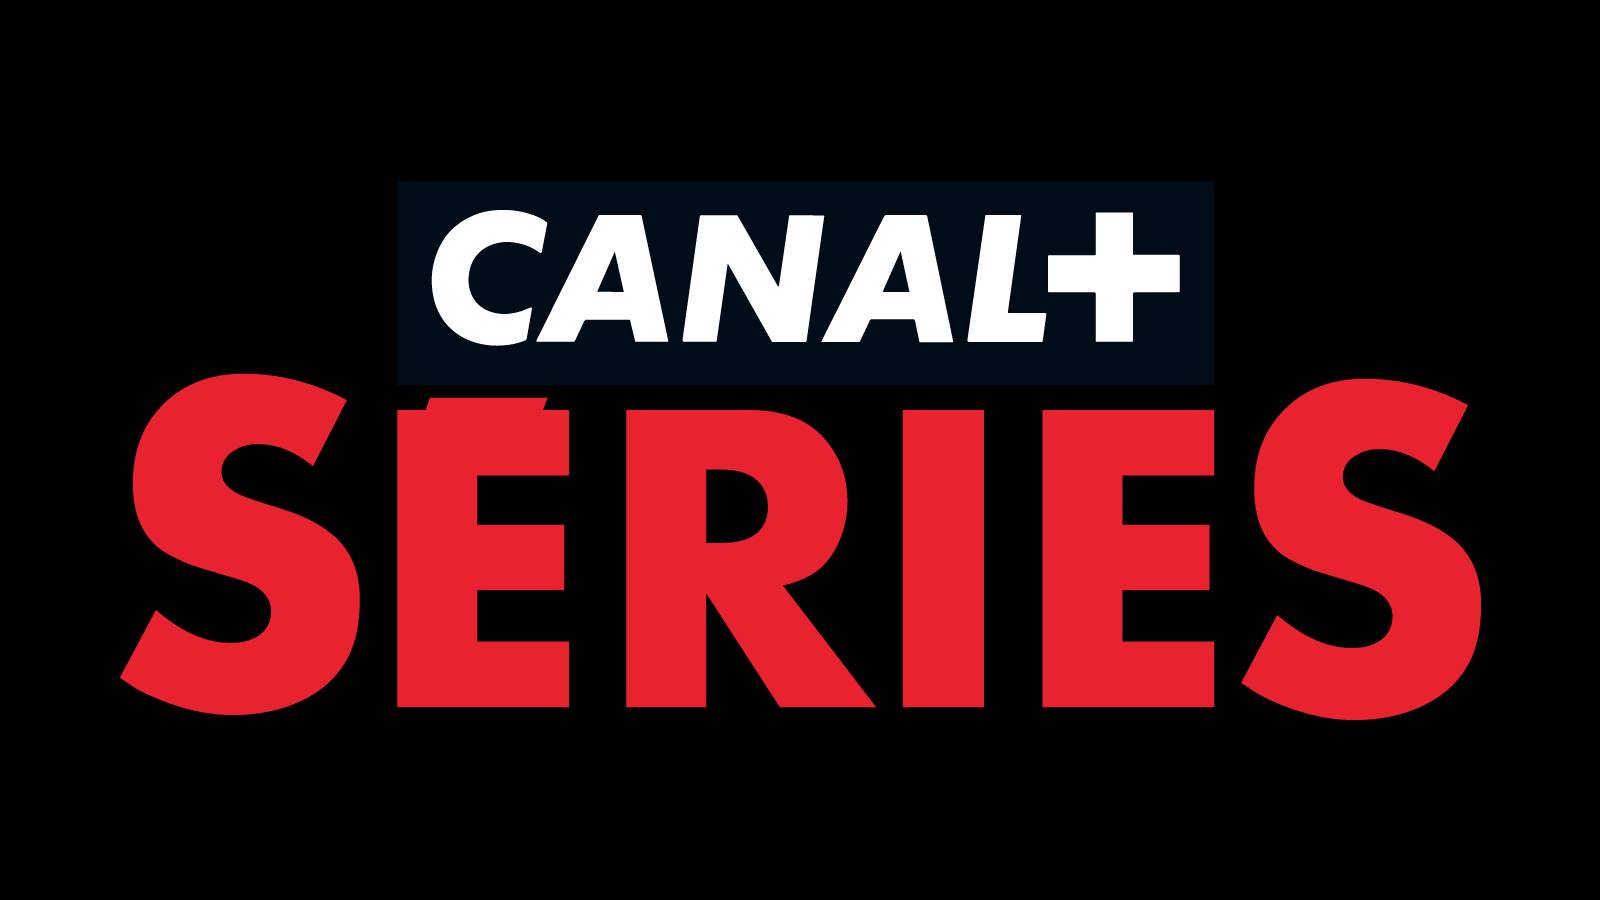 Canal+ Séries est offert pendant 1 an aux abonnés Freebox Pop et Delta